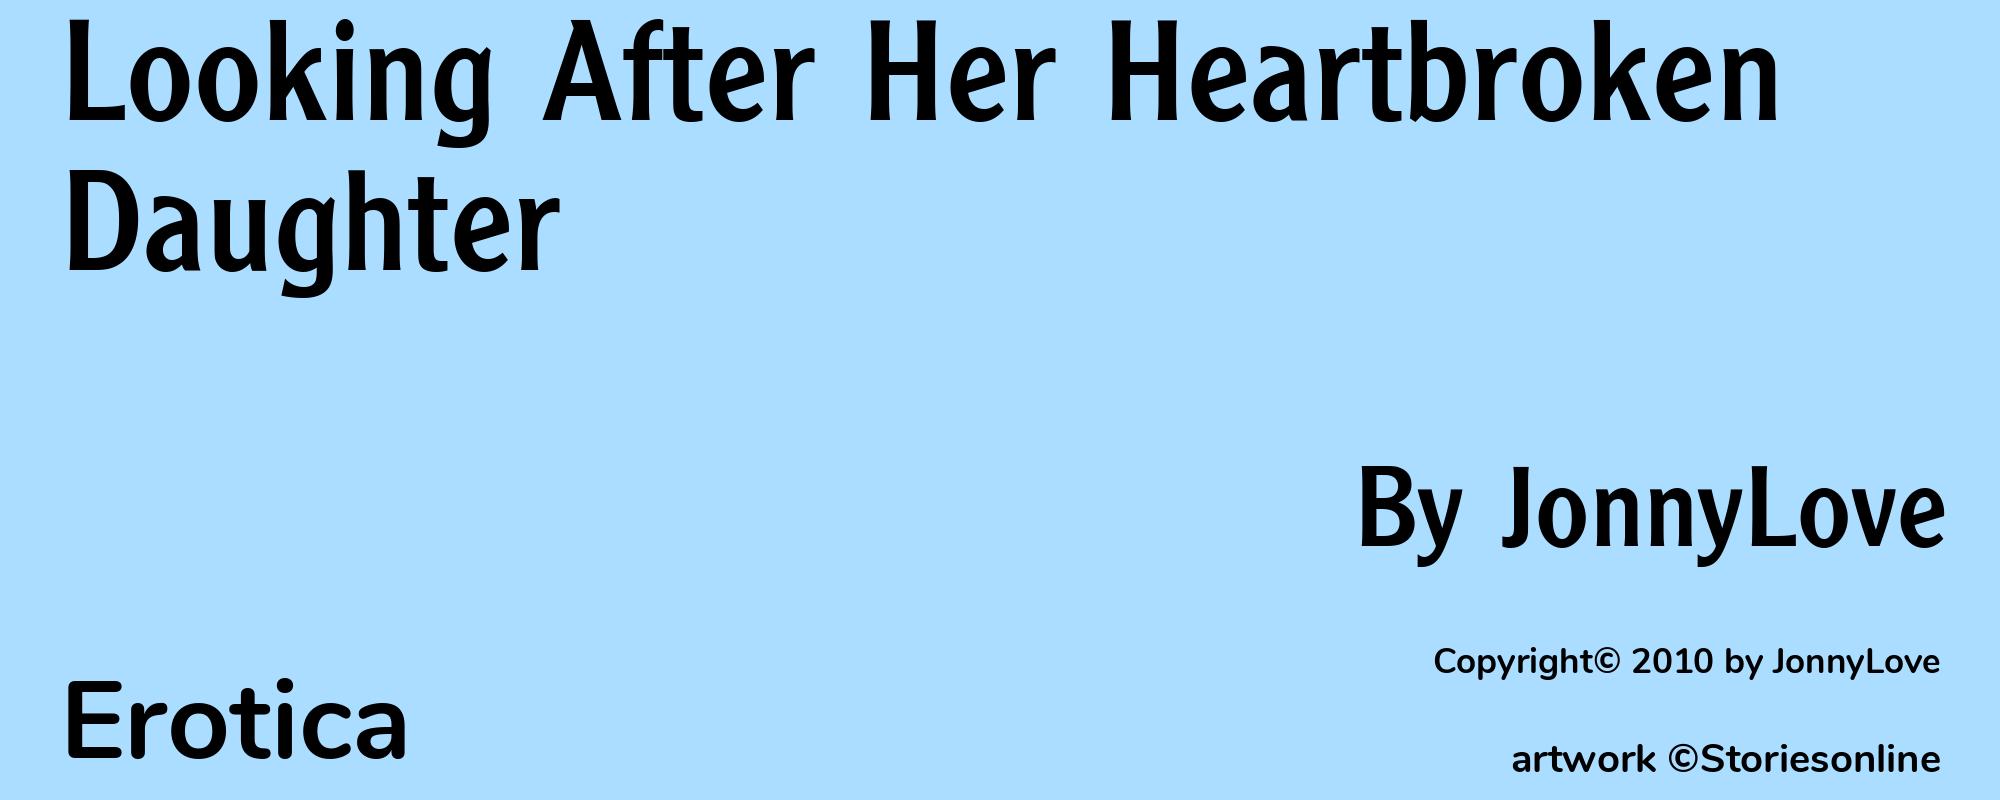 Looking After Her Heartbroken Daughter - Cover